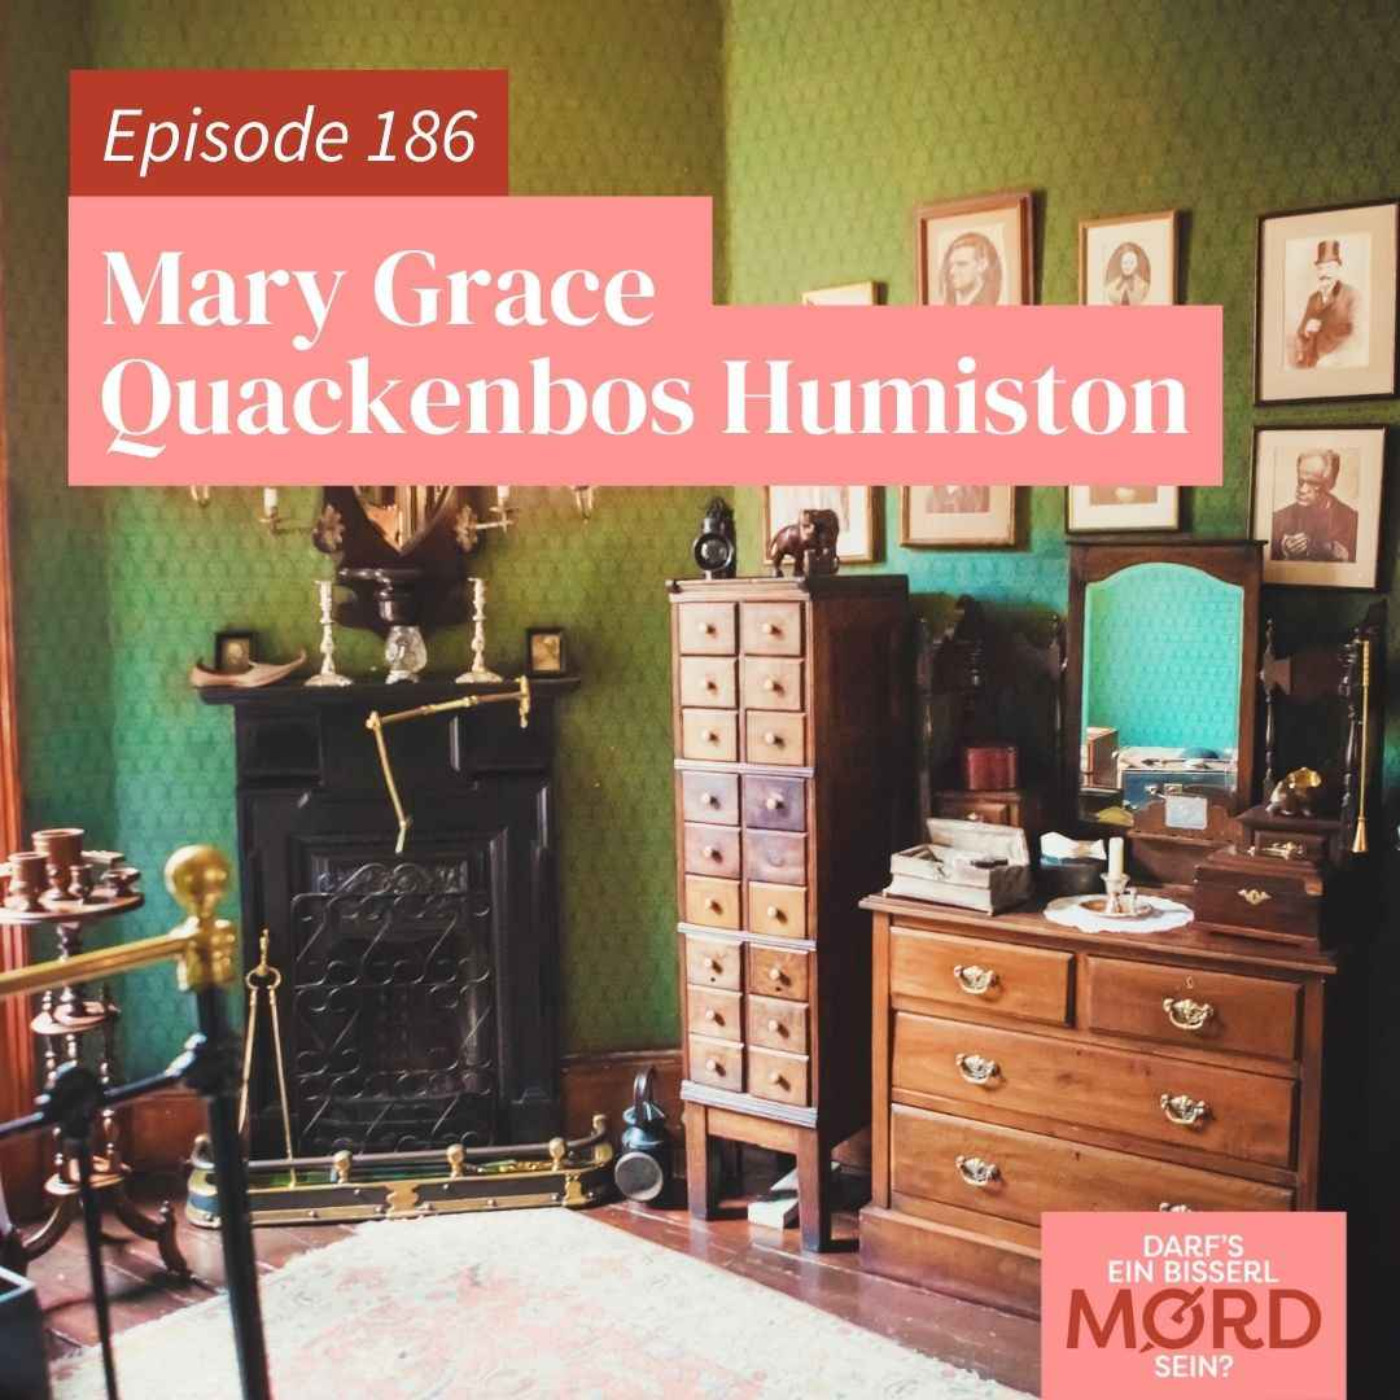 Episode 186: Mary Grace Quackenbos Humiston